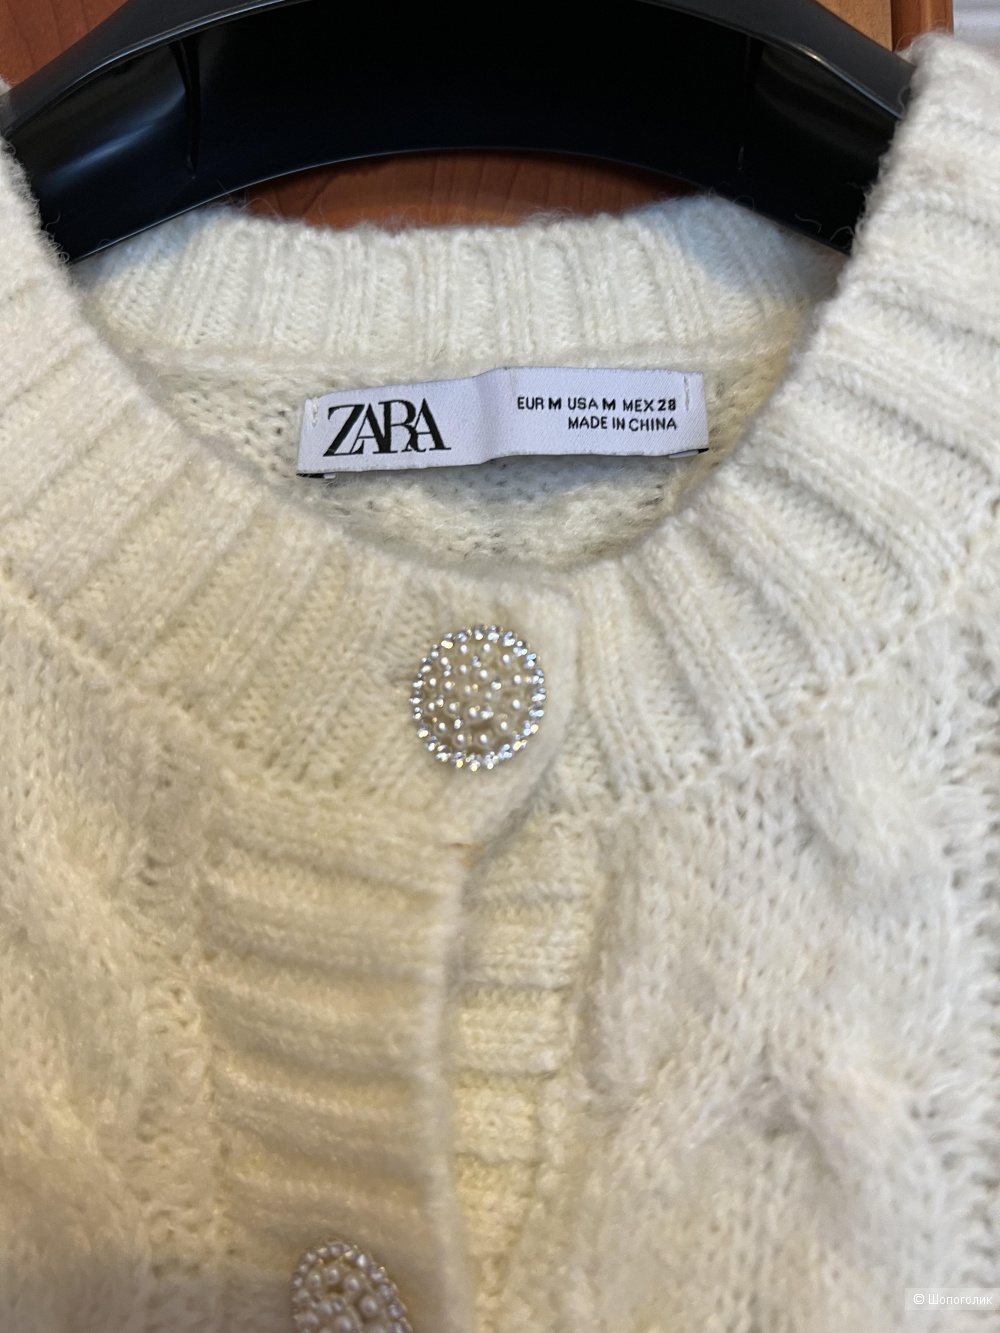 Кардиган Zara, размер М